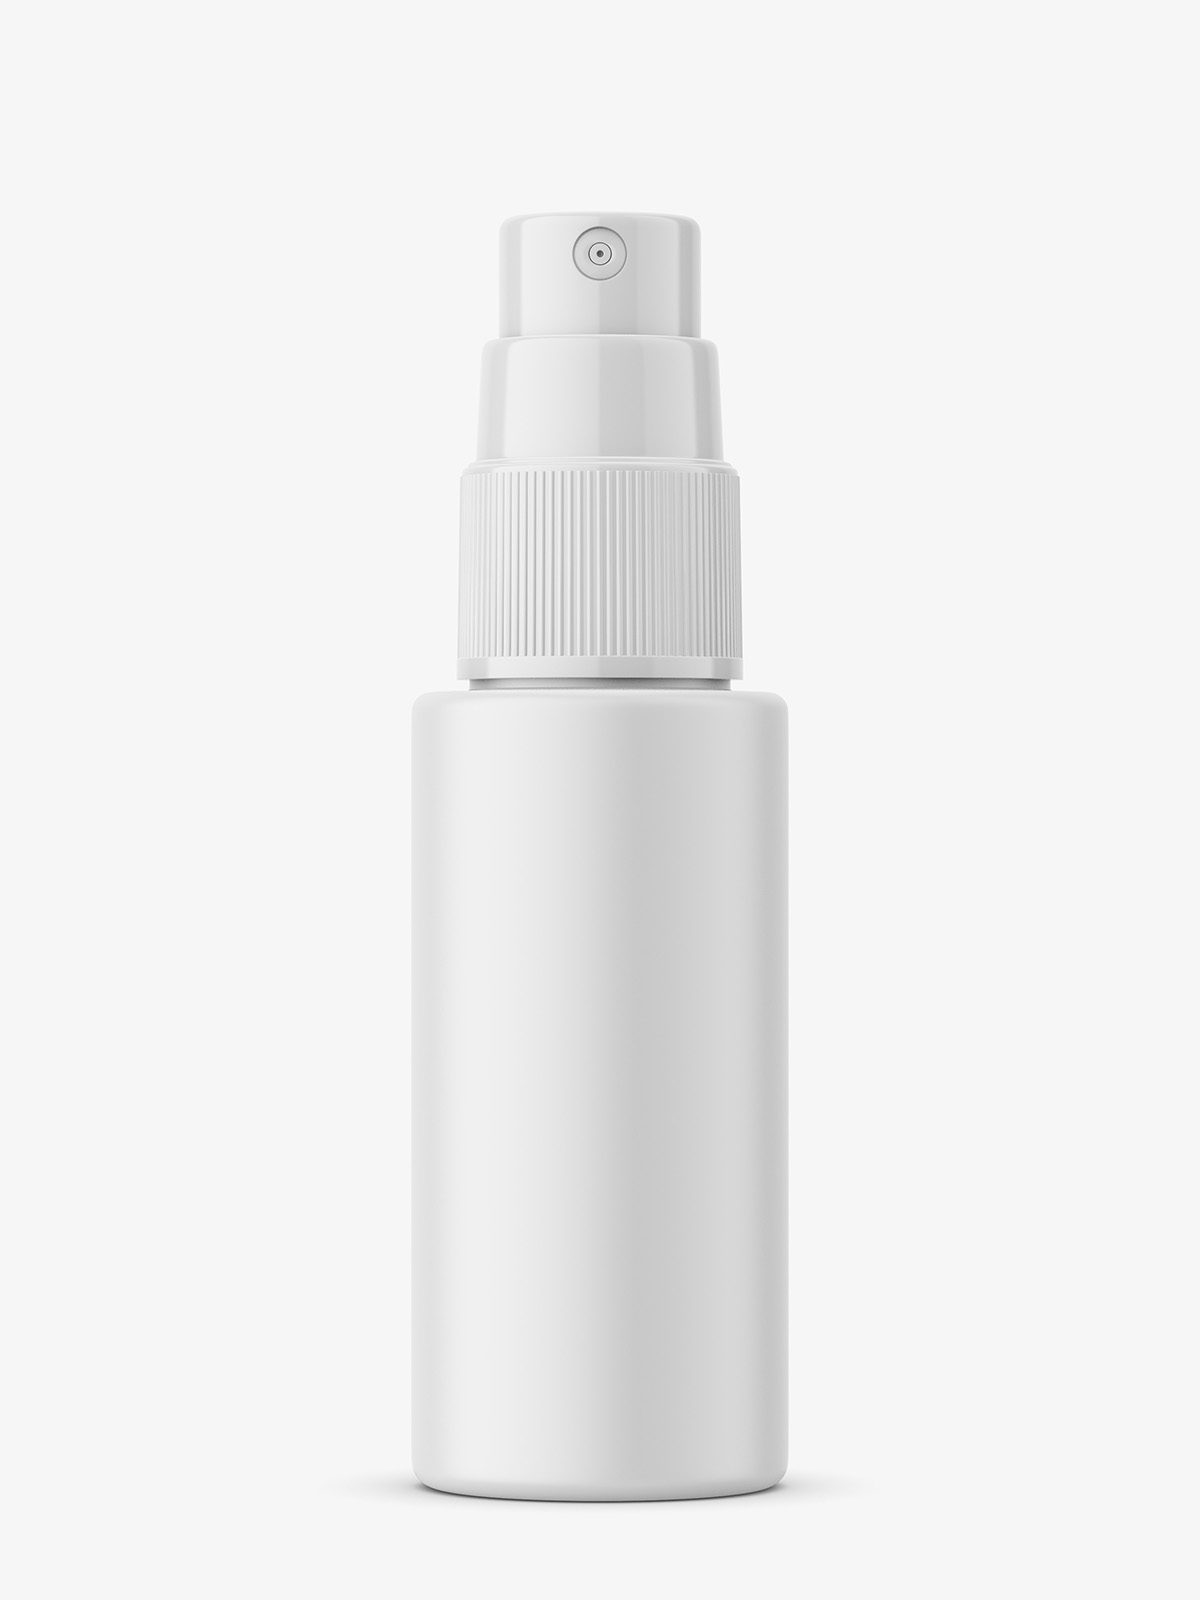 Download Mist Spray Bottle Mockup 30 Ml Smarty Mockups